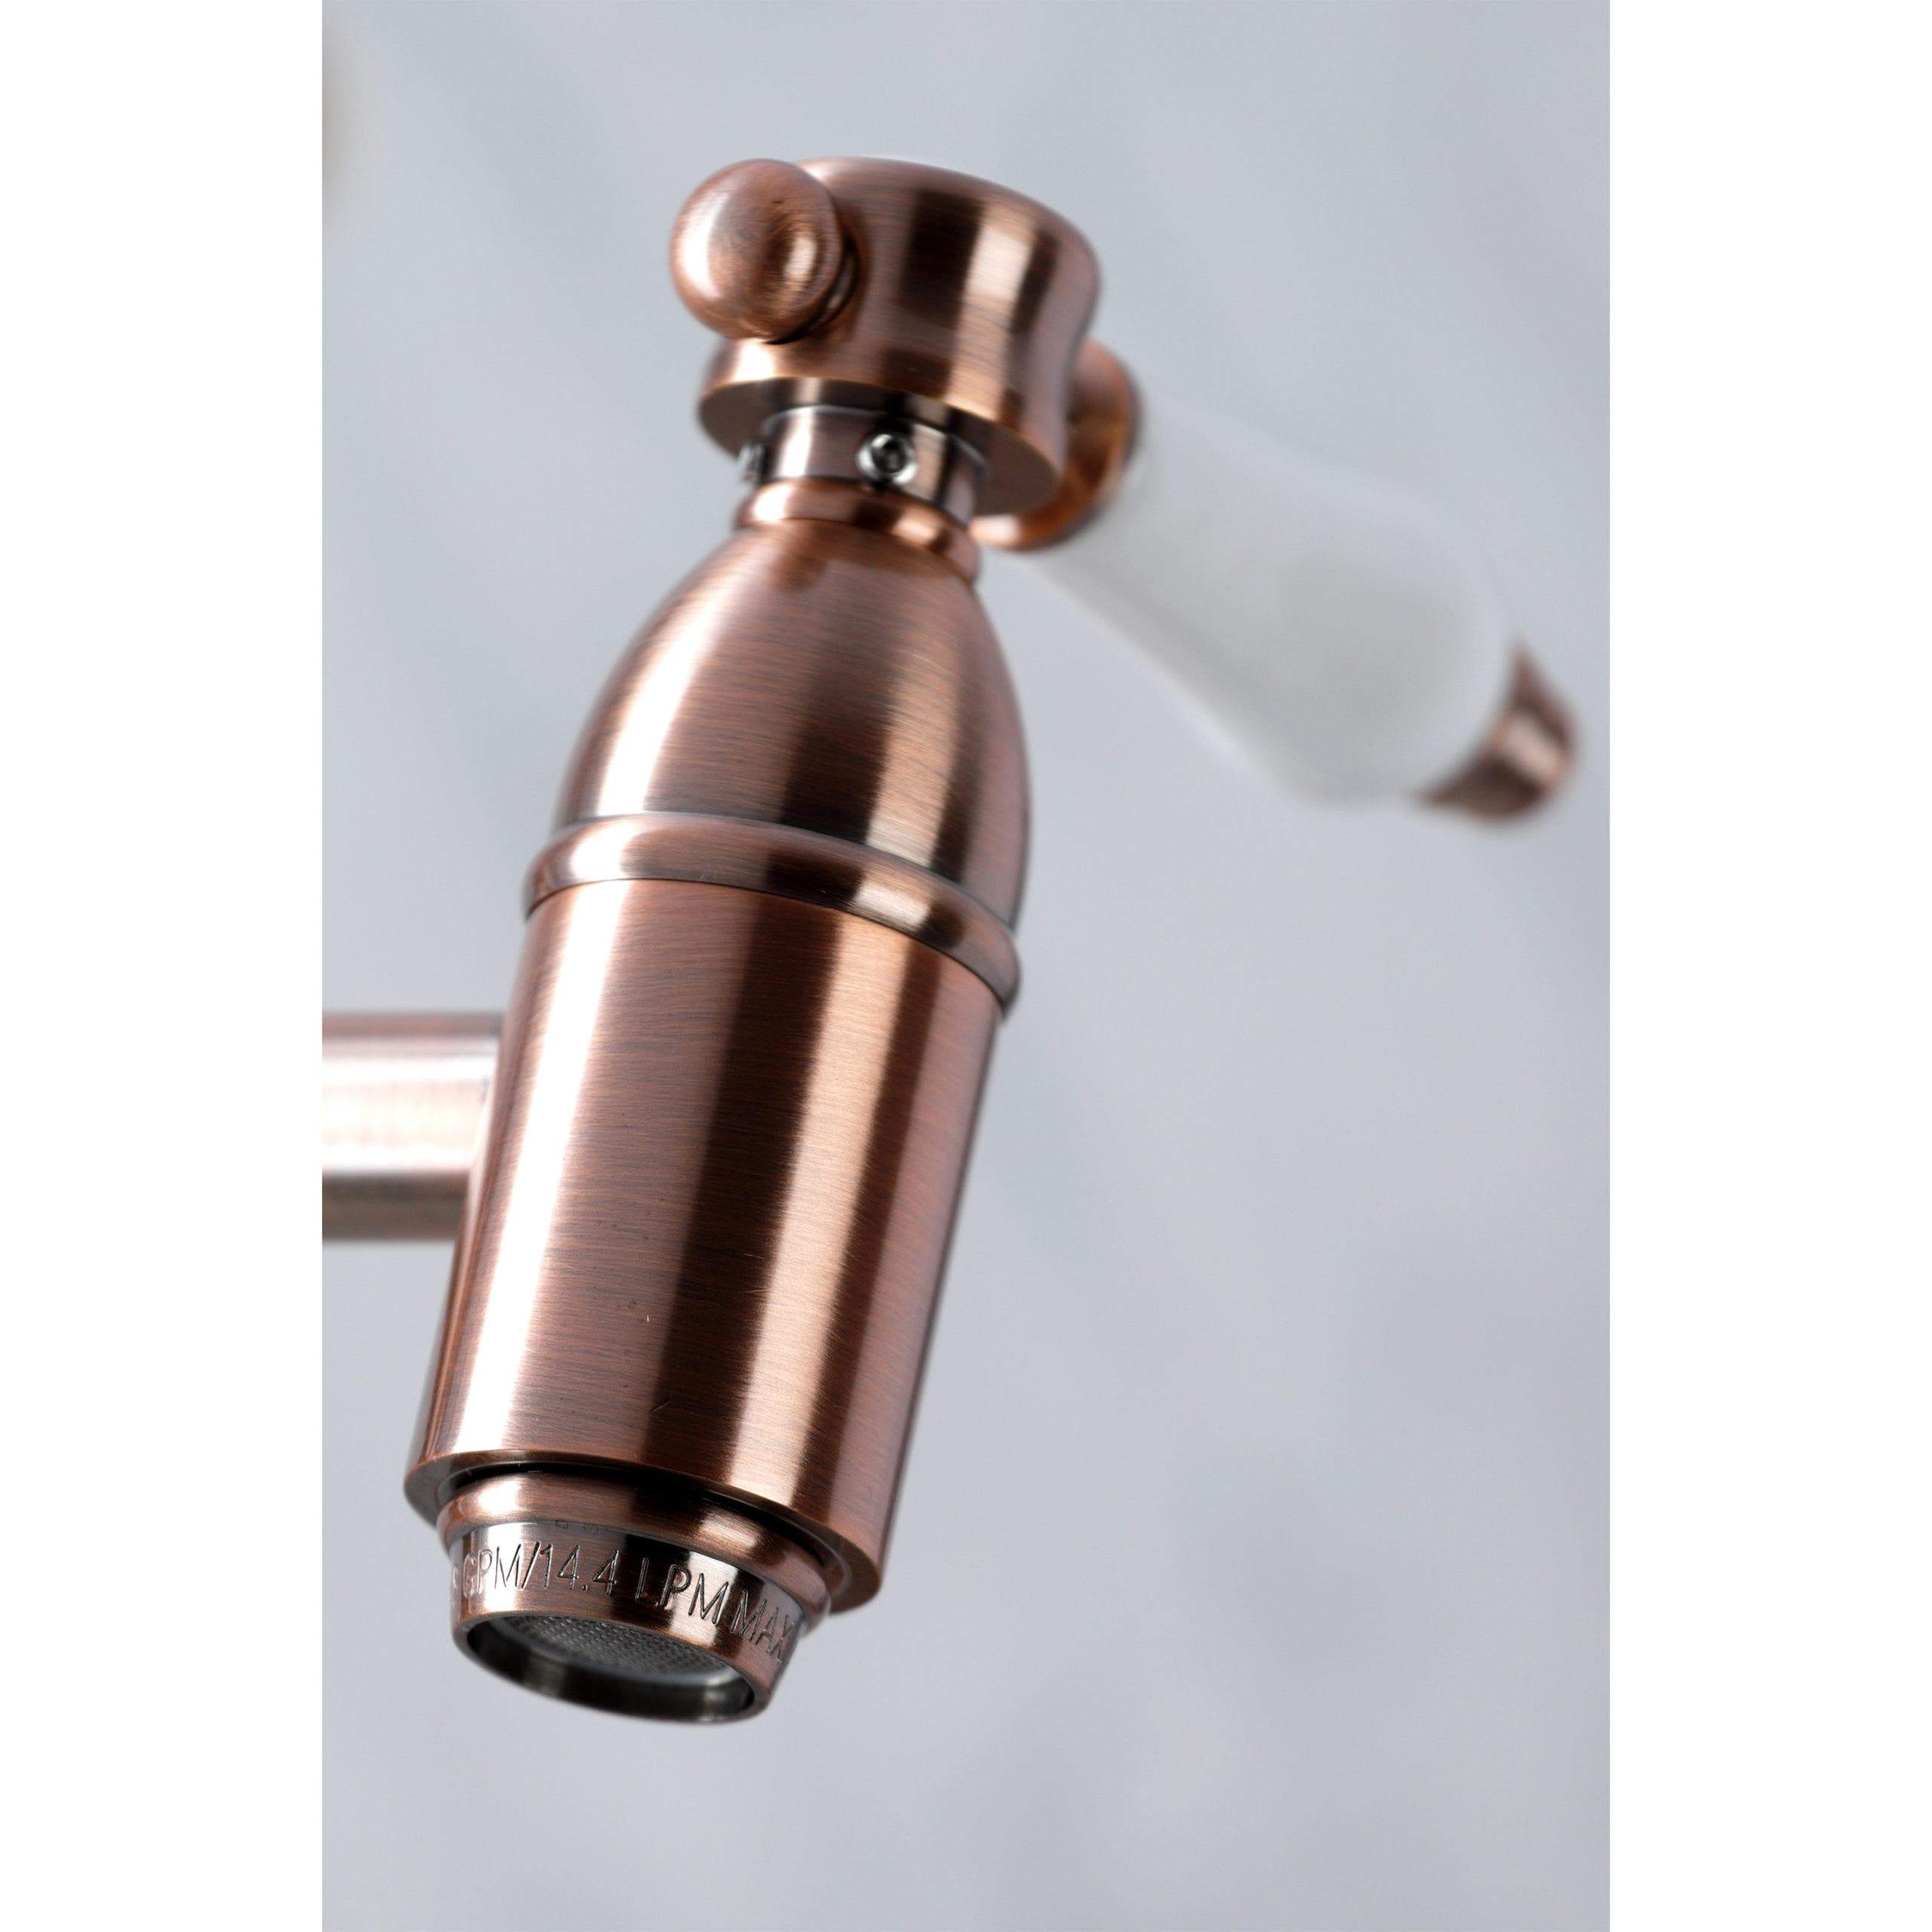 Kingston Brass KS310BPLAC Bel Air Wall Mount Pot Filler Kitchen Faucet, Antique Copper